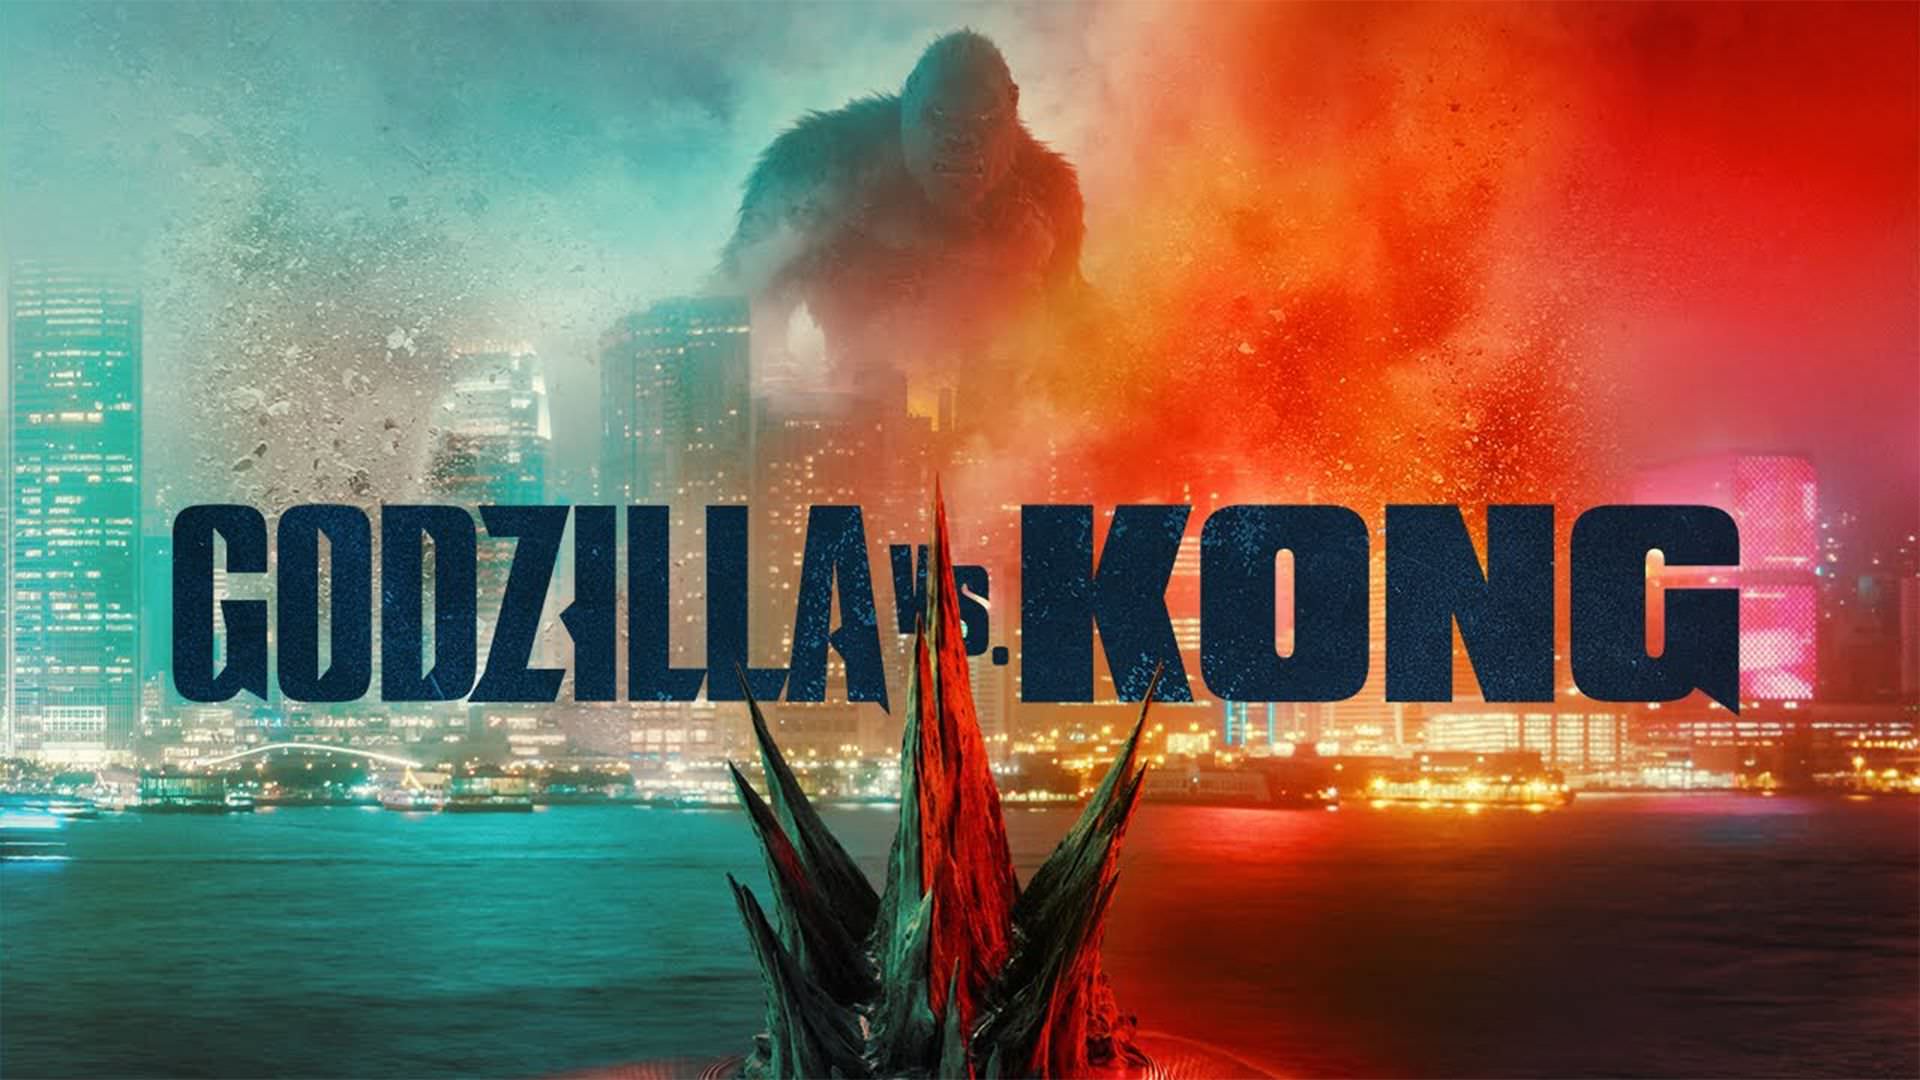 اولین تریلر فیلم Godzilla vs. Kong منتشر شد؛ مبارزه کینگ کونگ با گودزیلا برای نجات زمین